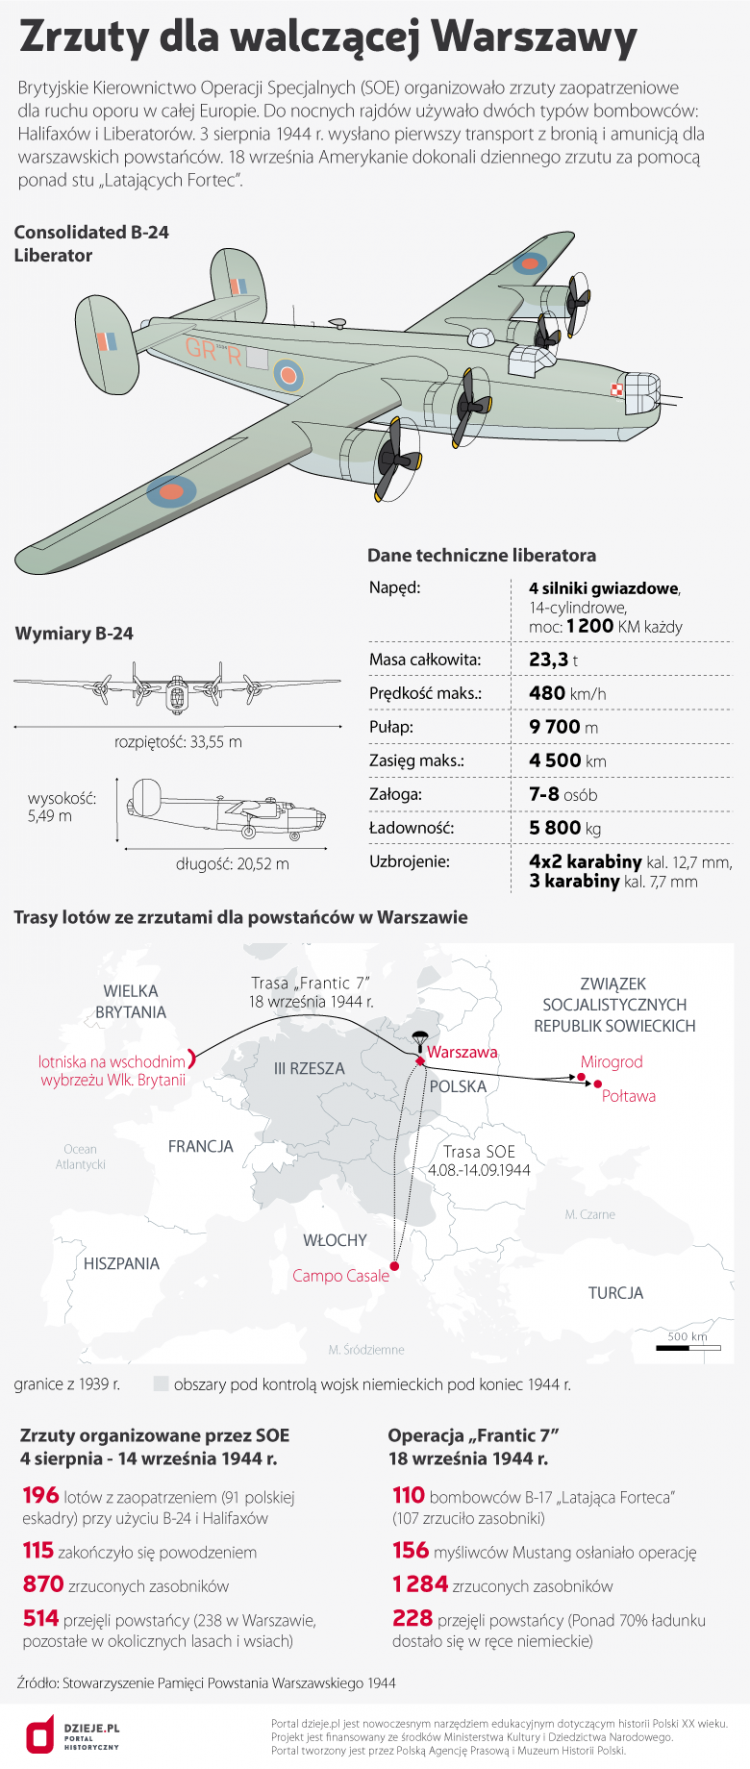 Zrzuty dla walczącej Warszawy. Źródło: Infografika PAP